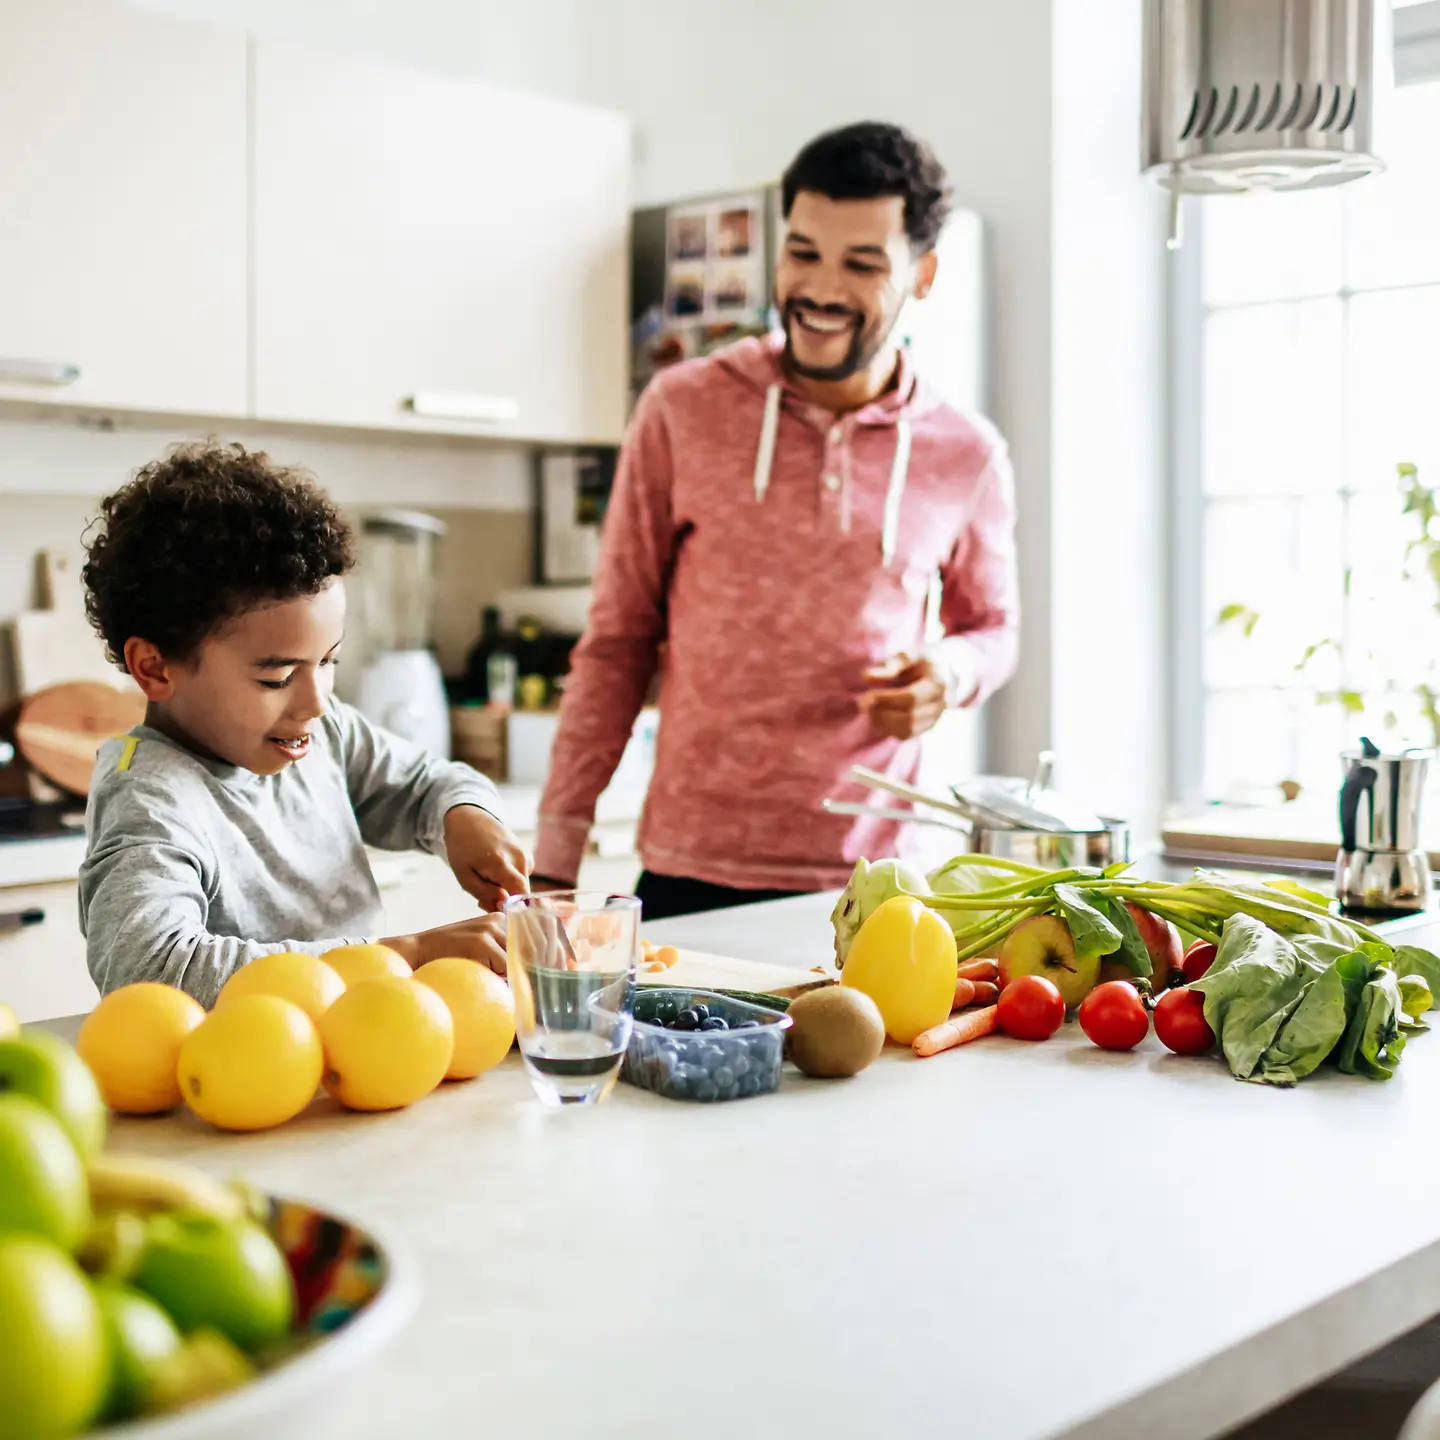 Ein Junge schneidet Obst und Gemüse auf einer Arbeitsplatte in einer Küche. Sein Dad steht daneben und lächelt.